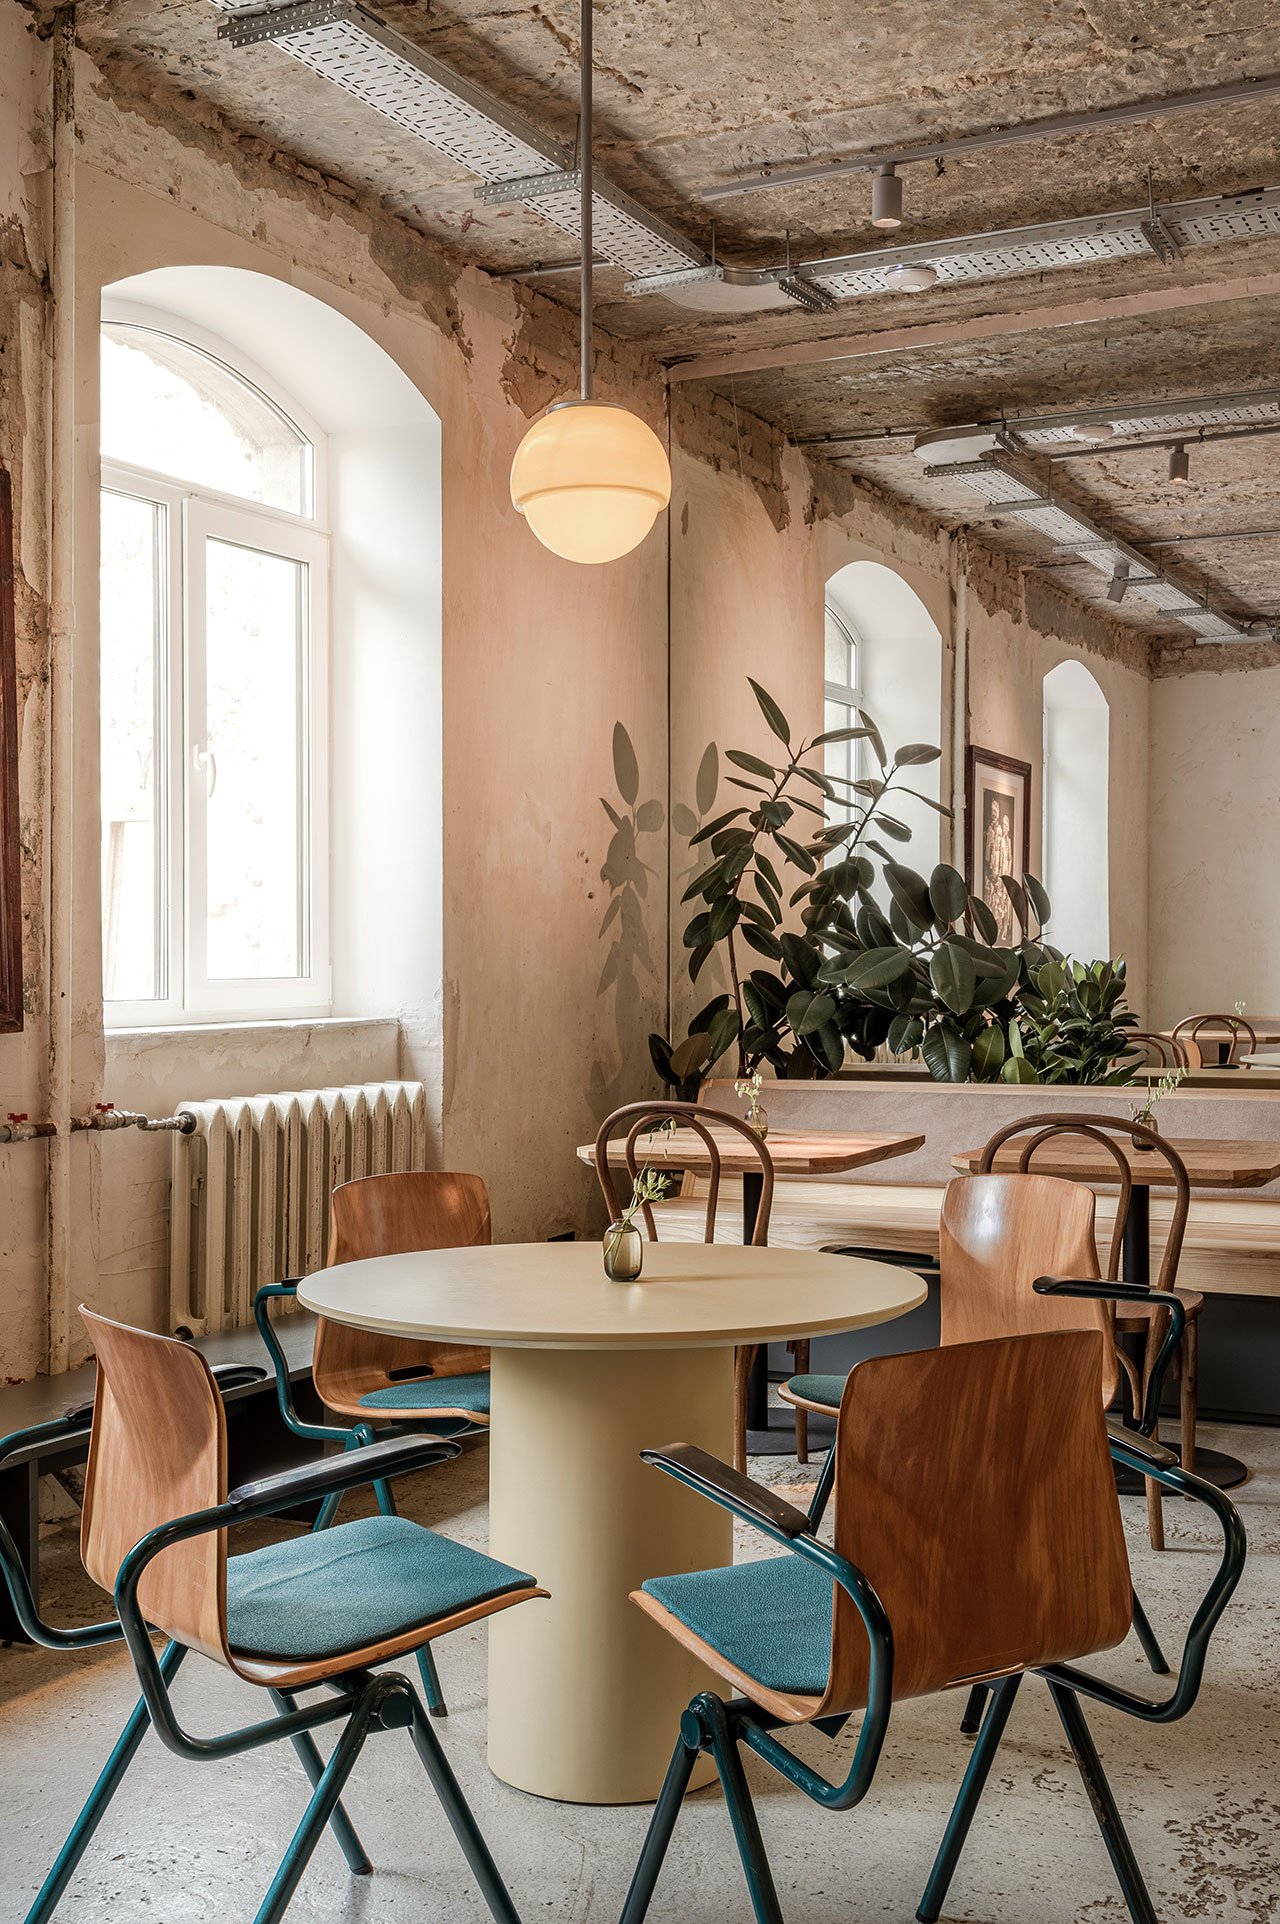 自然、复古、柔和的色调，原始顶面，艺术笔画、裸油漆,乌克兰基辅Dubler咖啡馆都是复古格调魅力咖啡馆,老式真皮沙发、老式玻璃和木质咖啡桌以及 1990 年代的黄色 Lumibär 灯